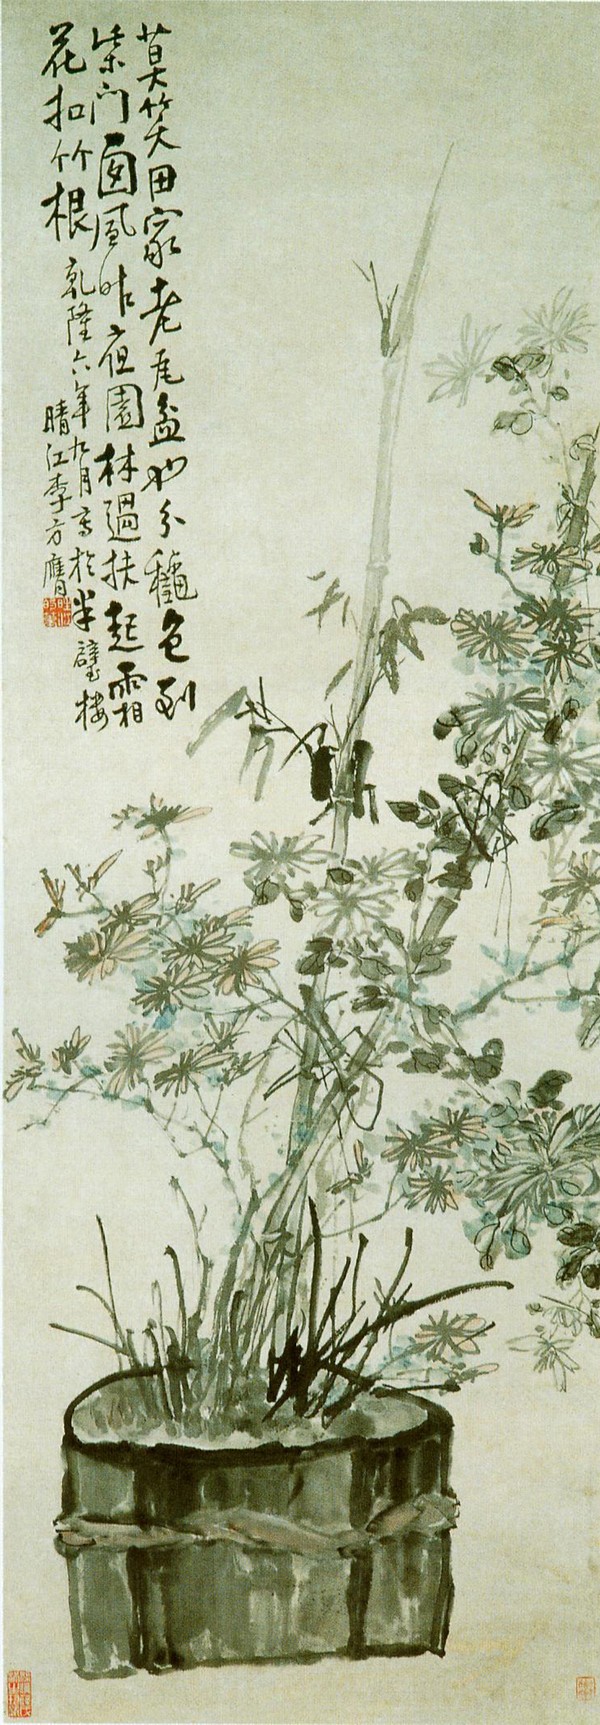 秋菊图轴